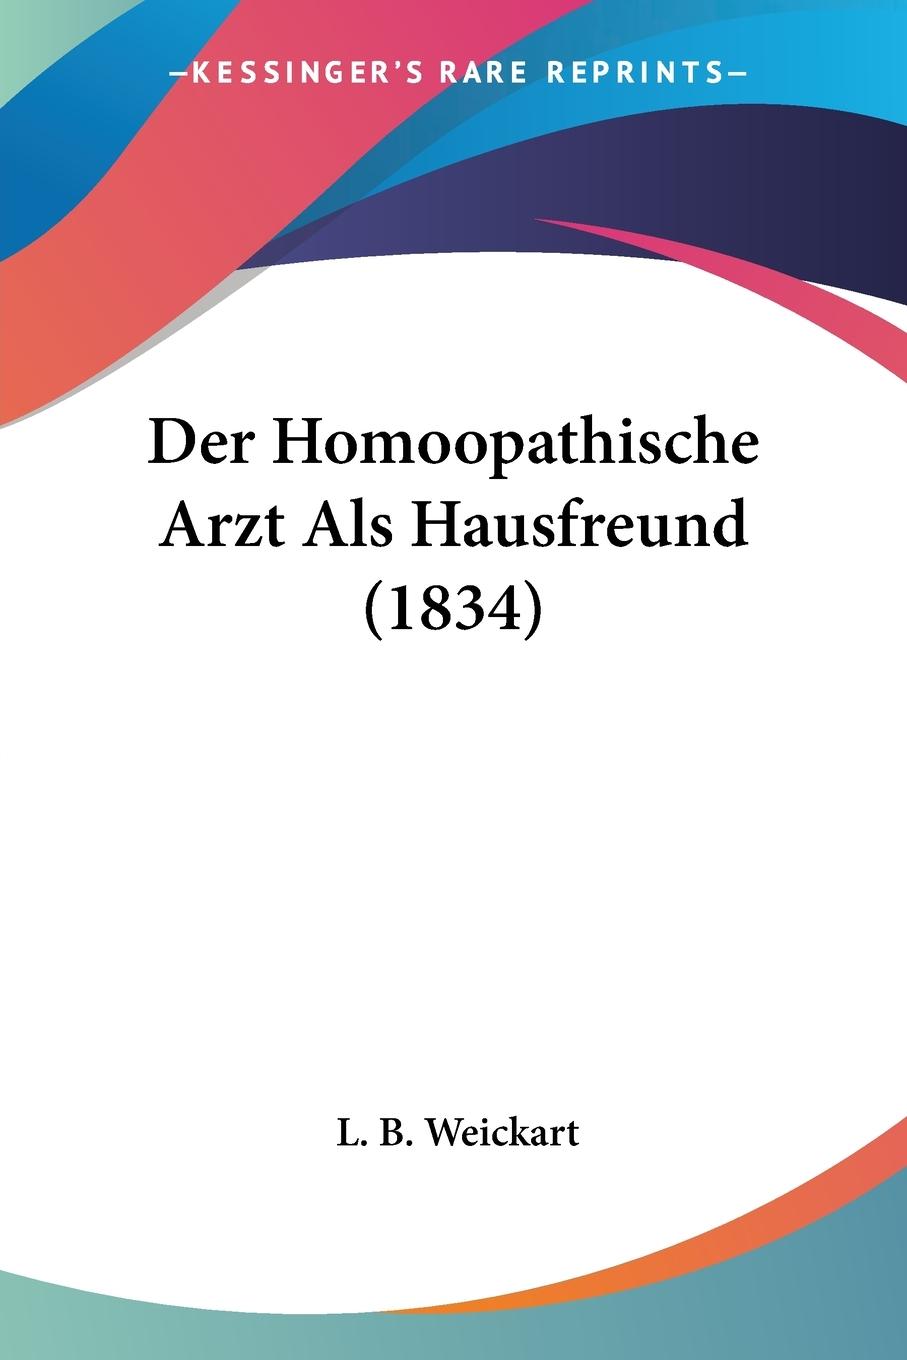 Der Homoopathische Arzt Als Hausfreund (1834) - Weickart, L. B.